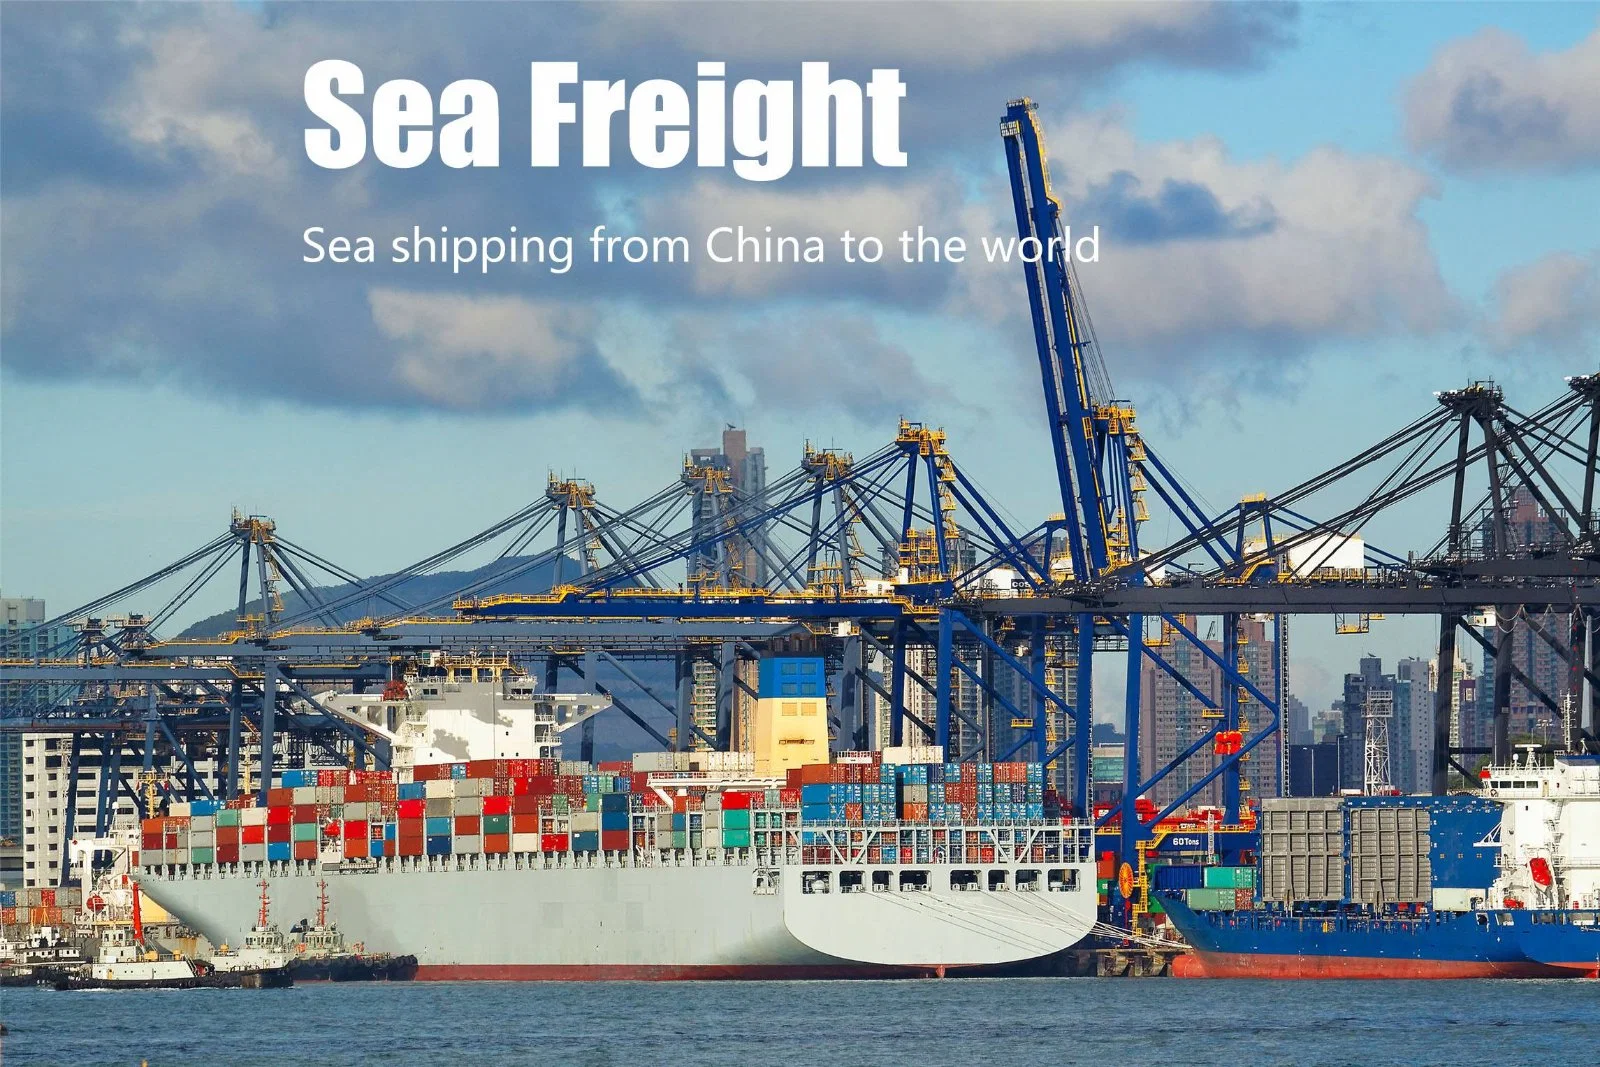 Professional China Guangzhou, agente de transporte de mercancías/agente/agente de carga transporte de mercancías de China a todo el mundo.